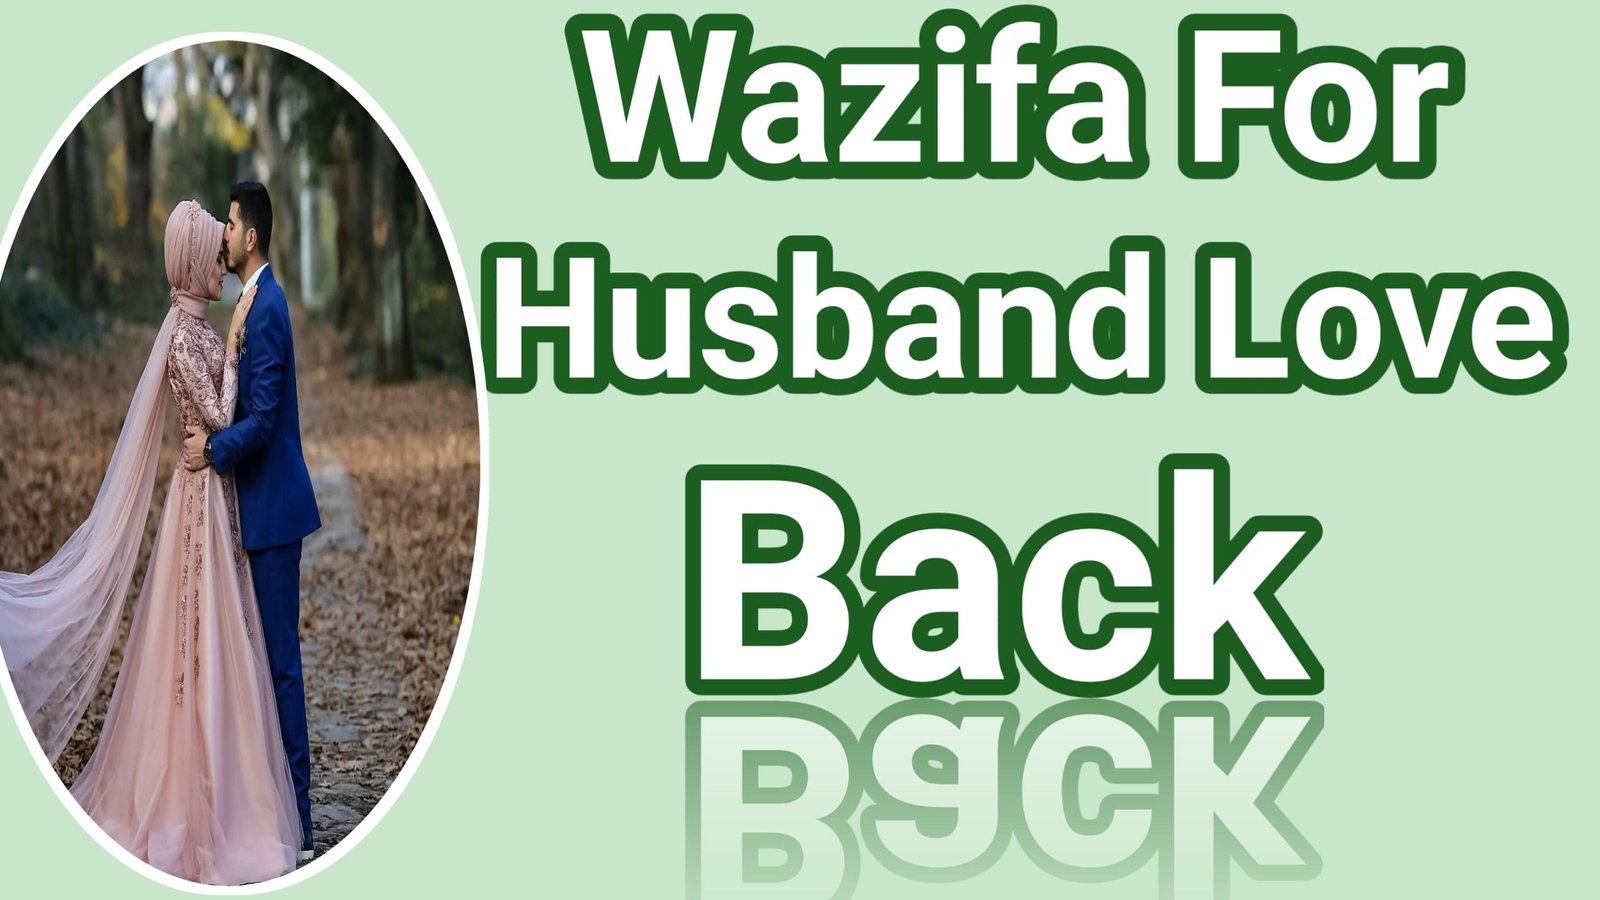 Wazifa for husband love back